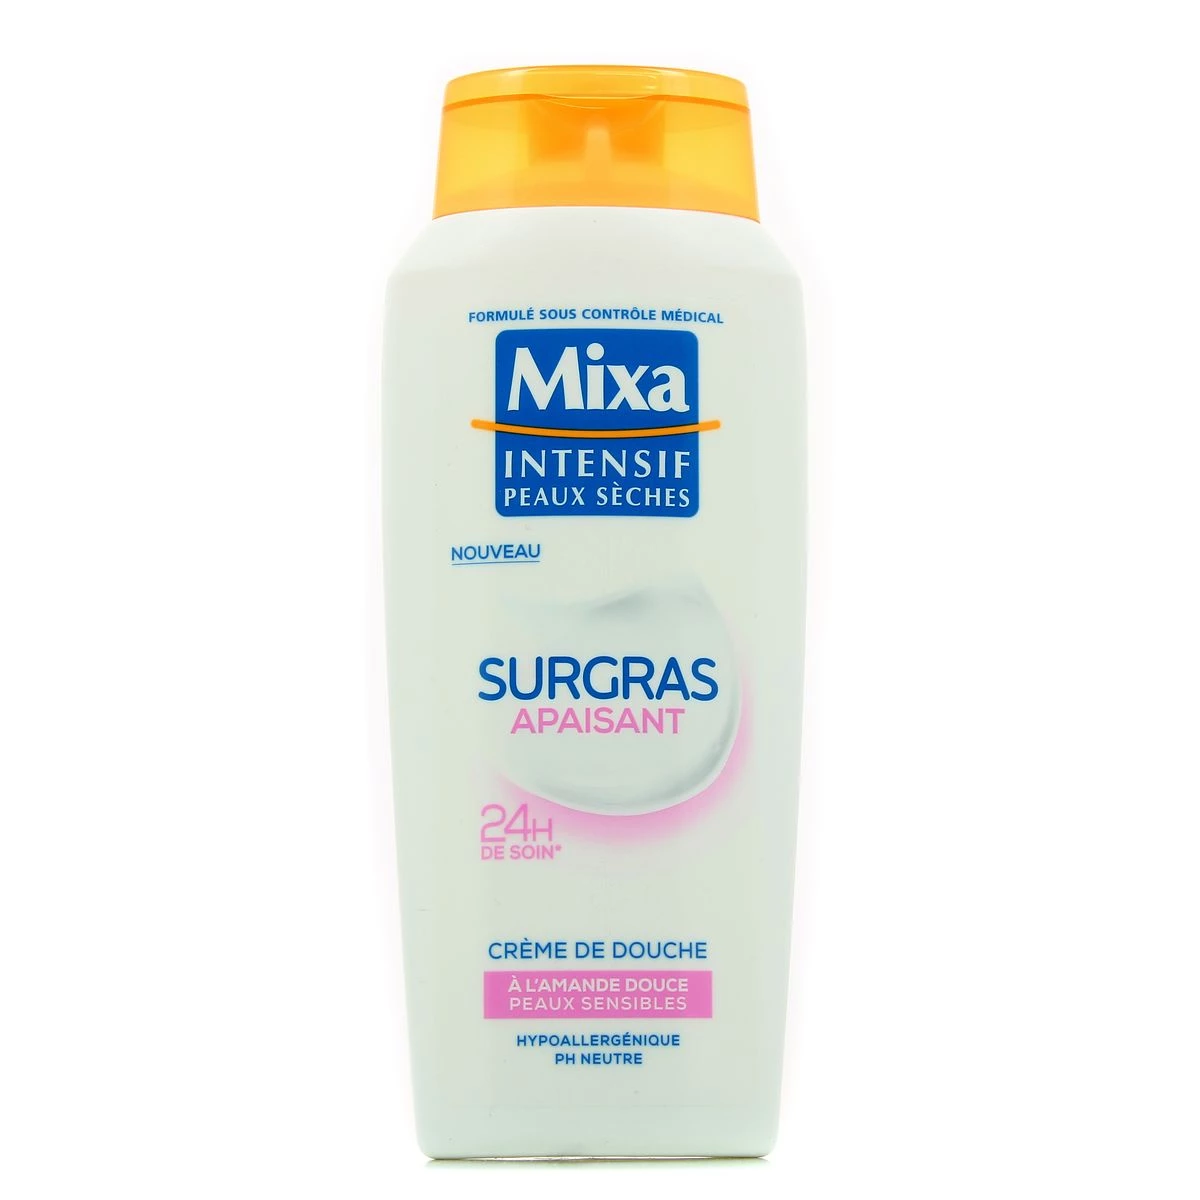 Crème de douche surgras apaisant intense à l'amande douce peaux sensibles 400ml - MIXA